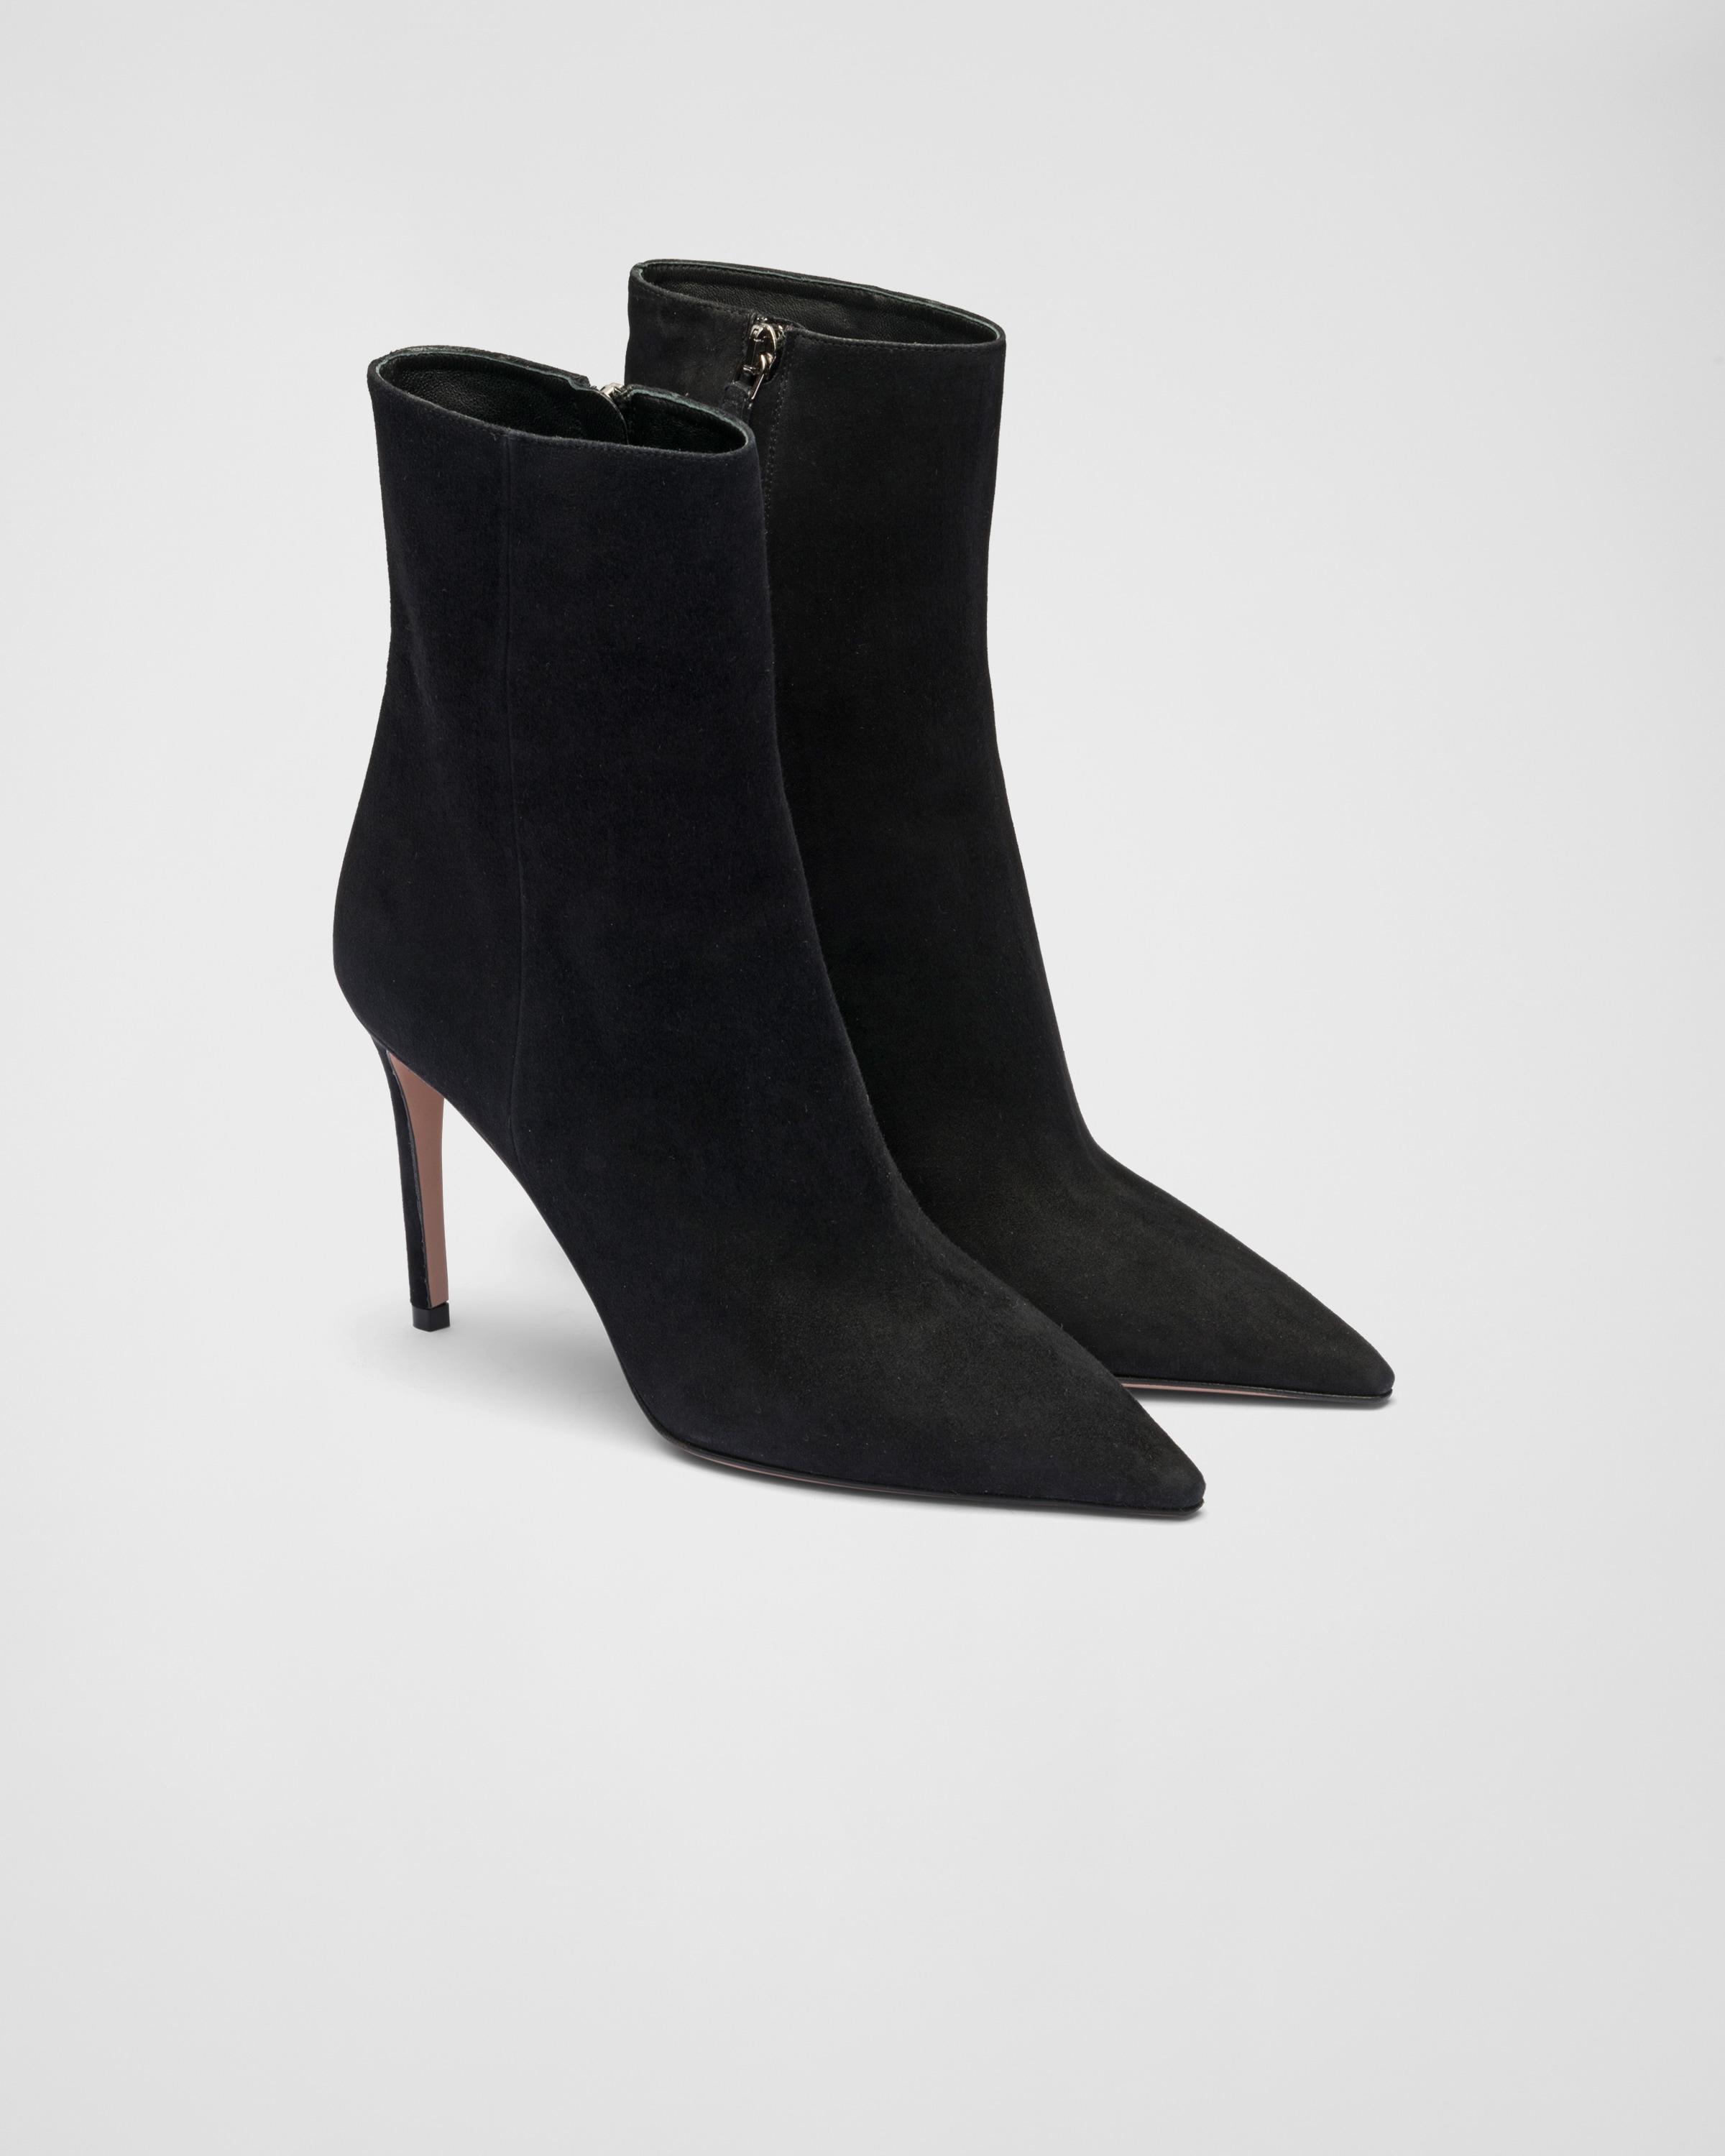 Prada High-heeled Suede Booties in Black | Lyst